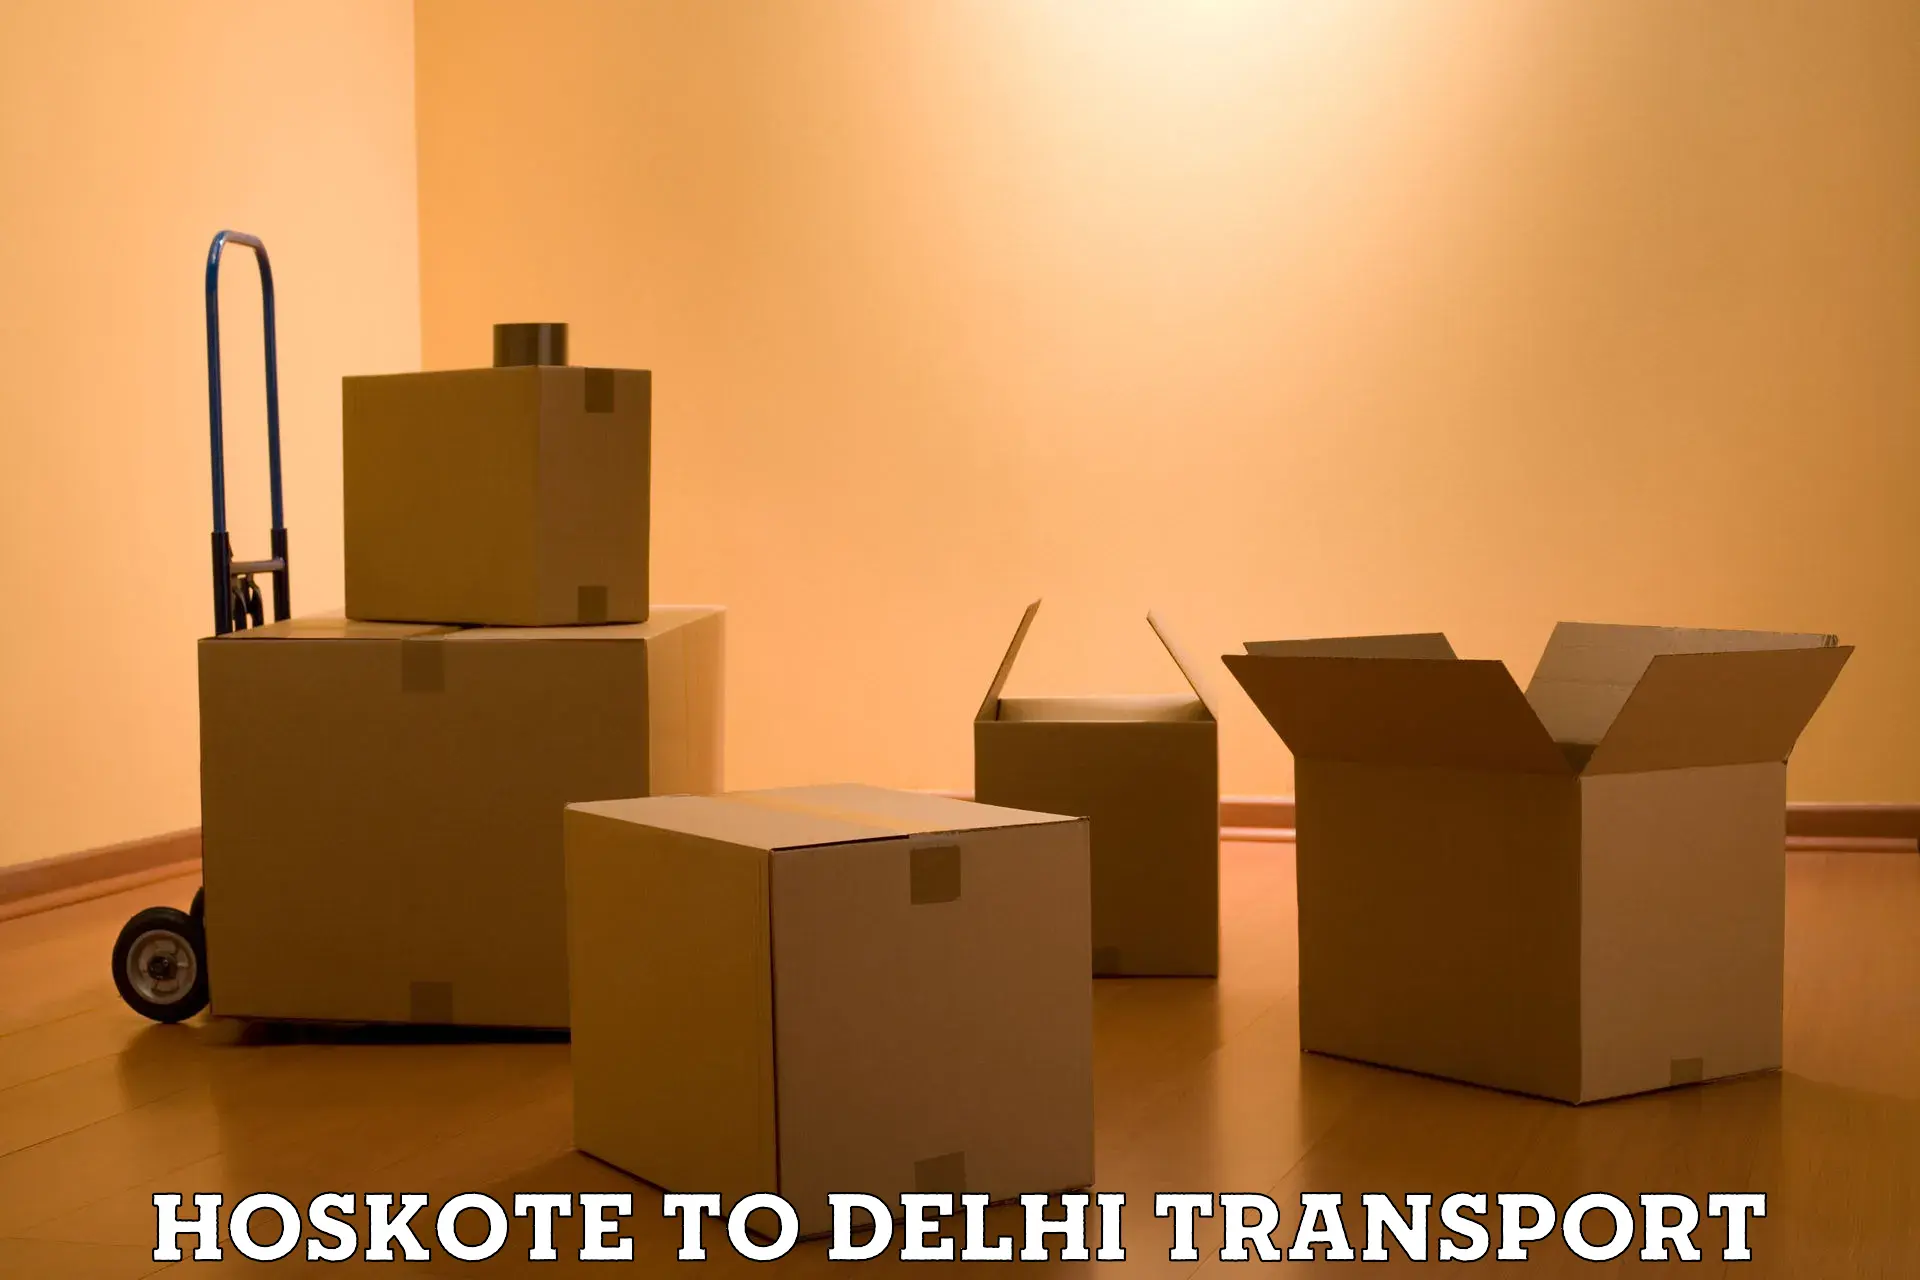 Shipping partner Hoskote to Delhi